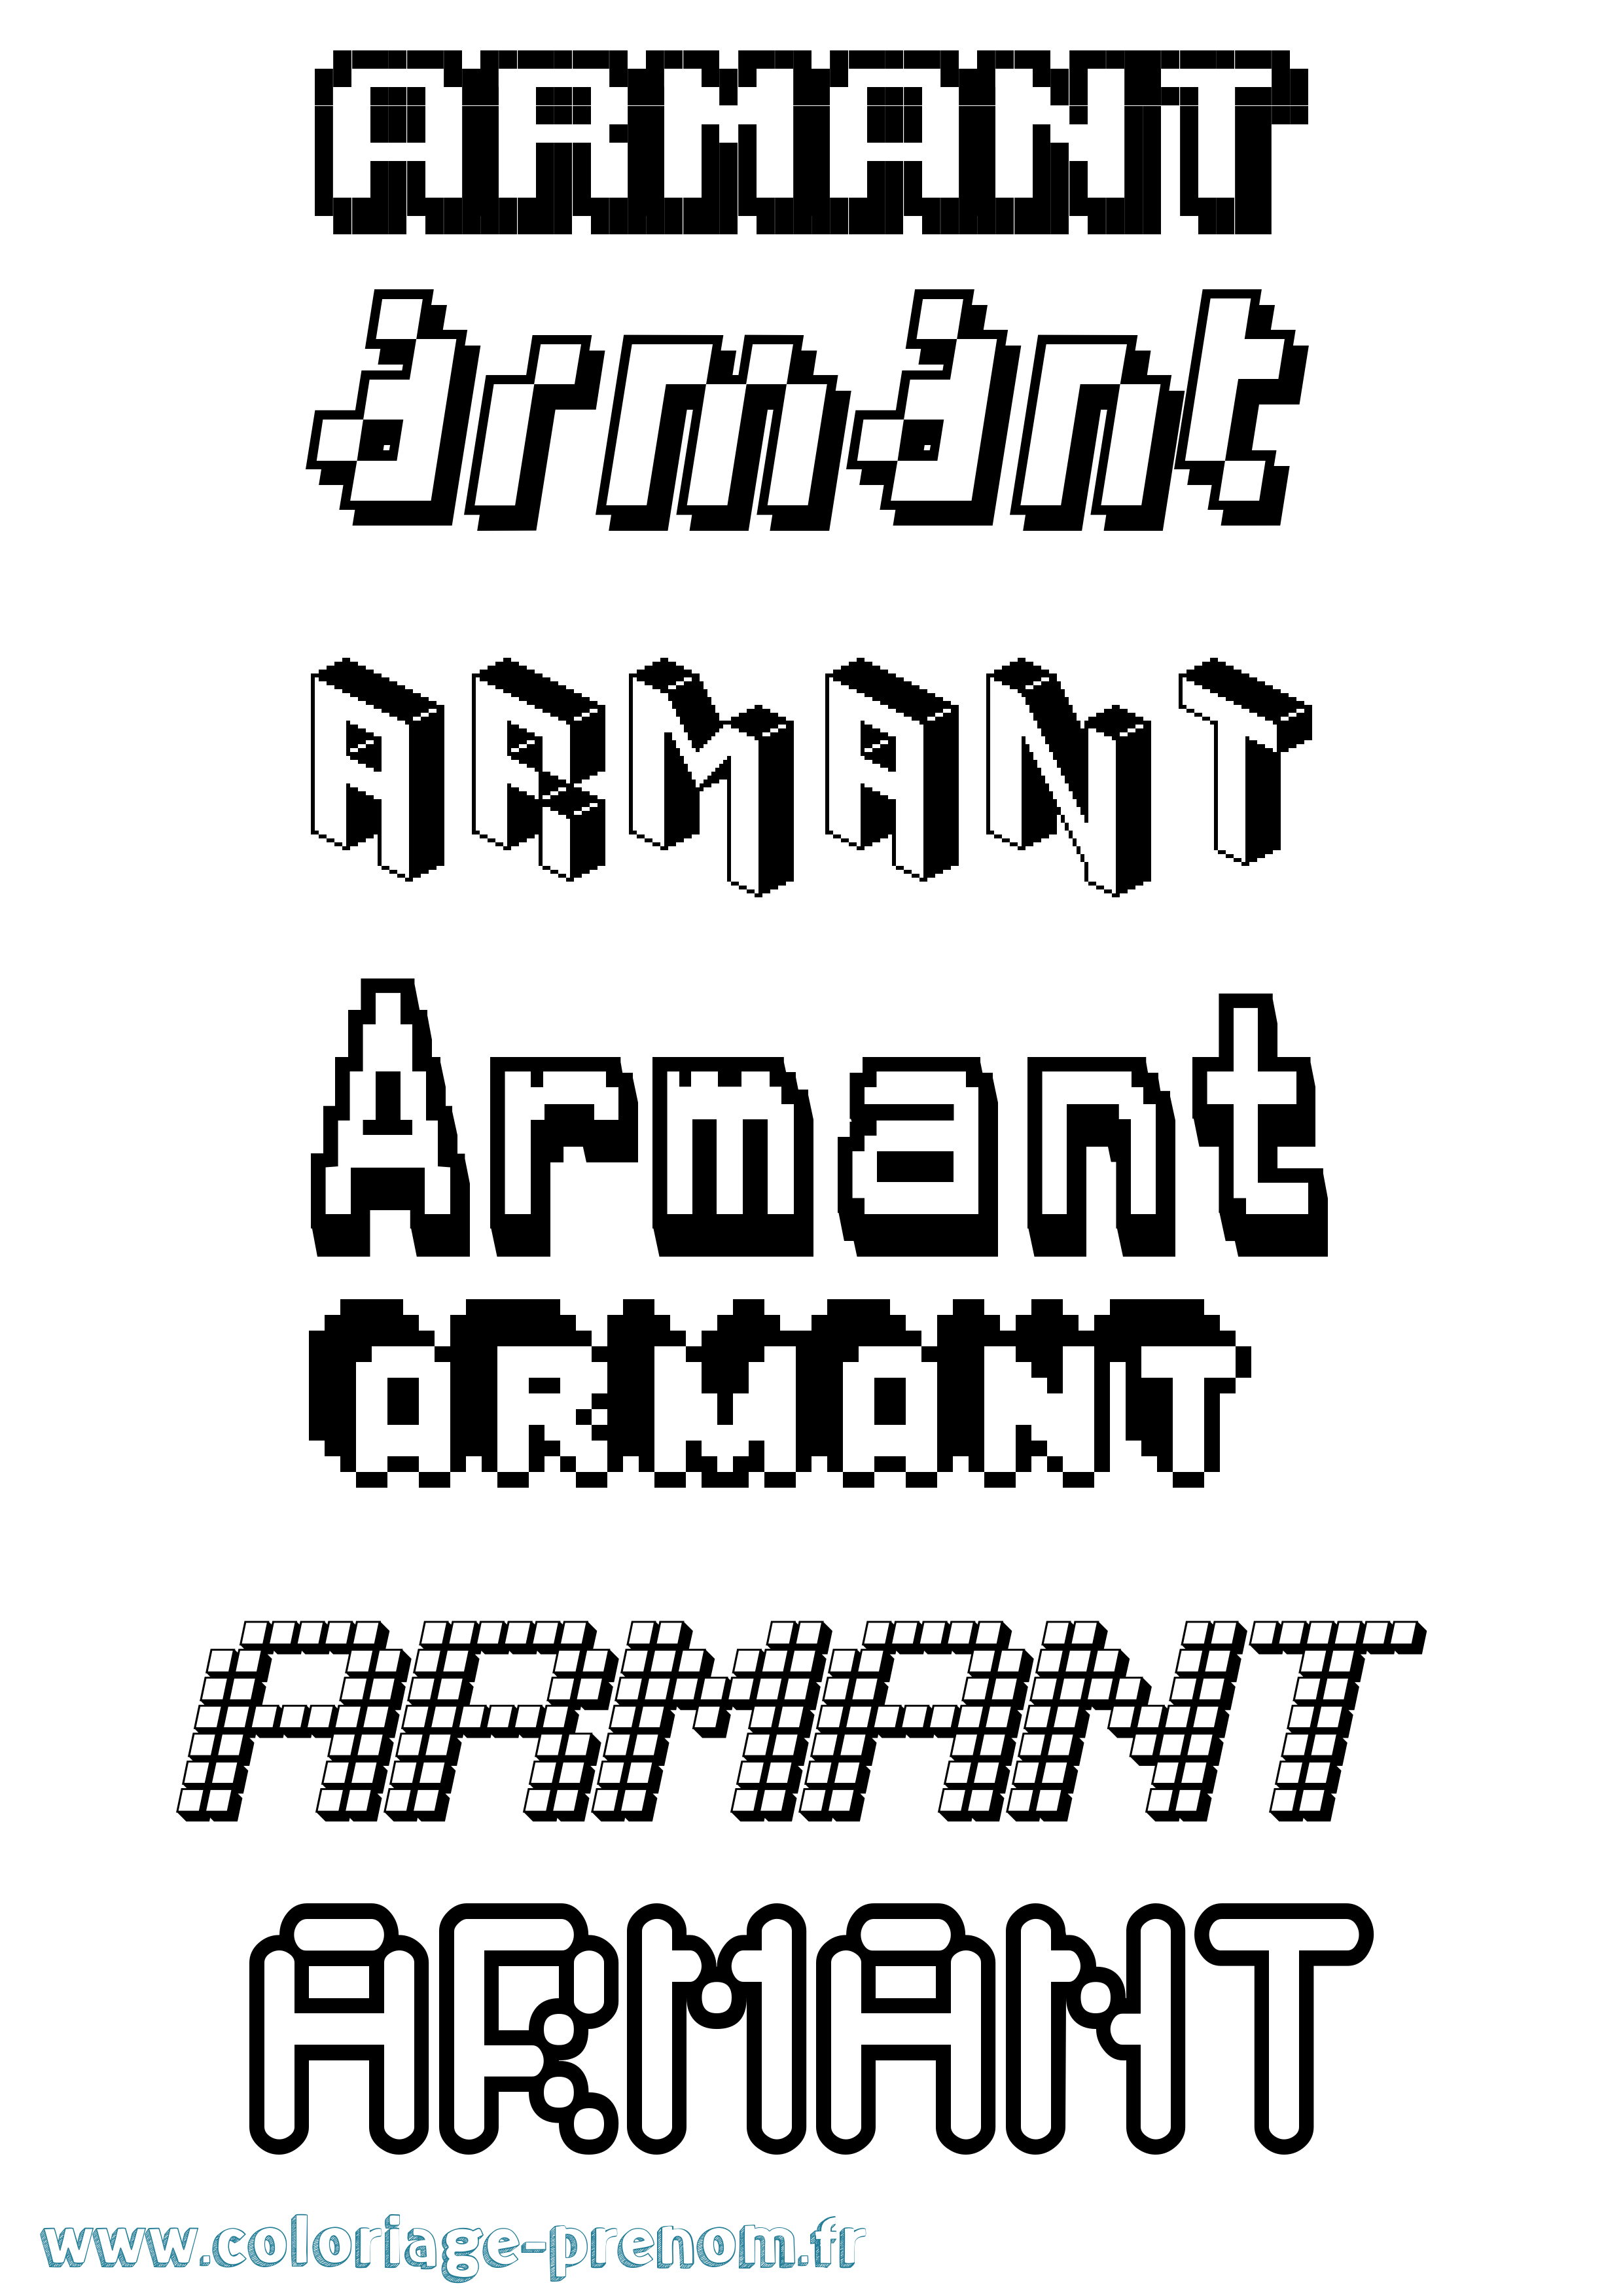 Coloriage prénom Armant Pixel